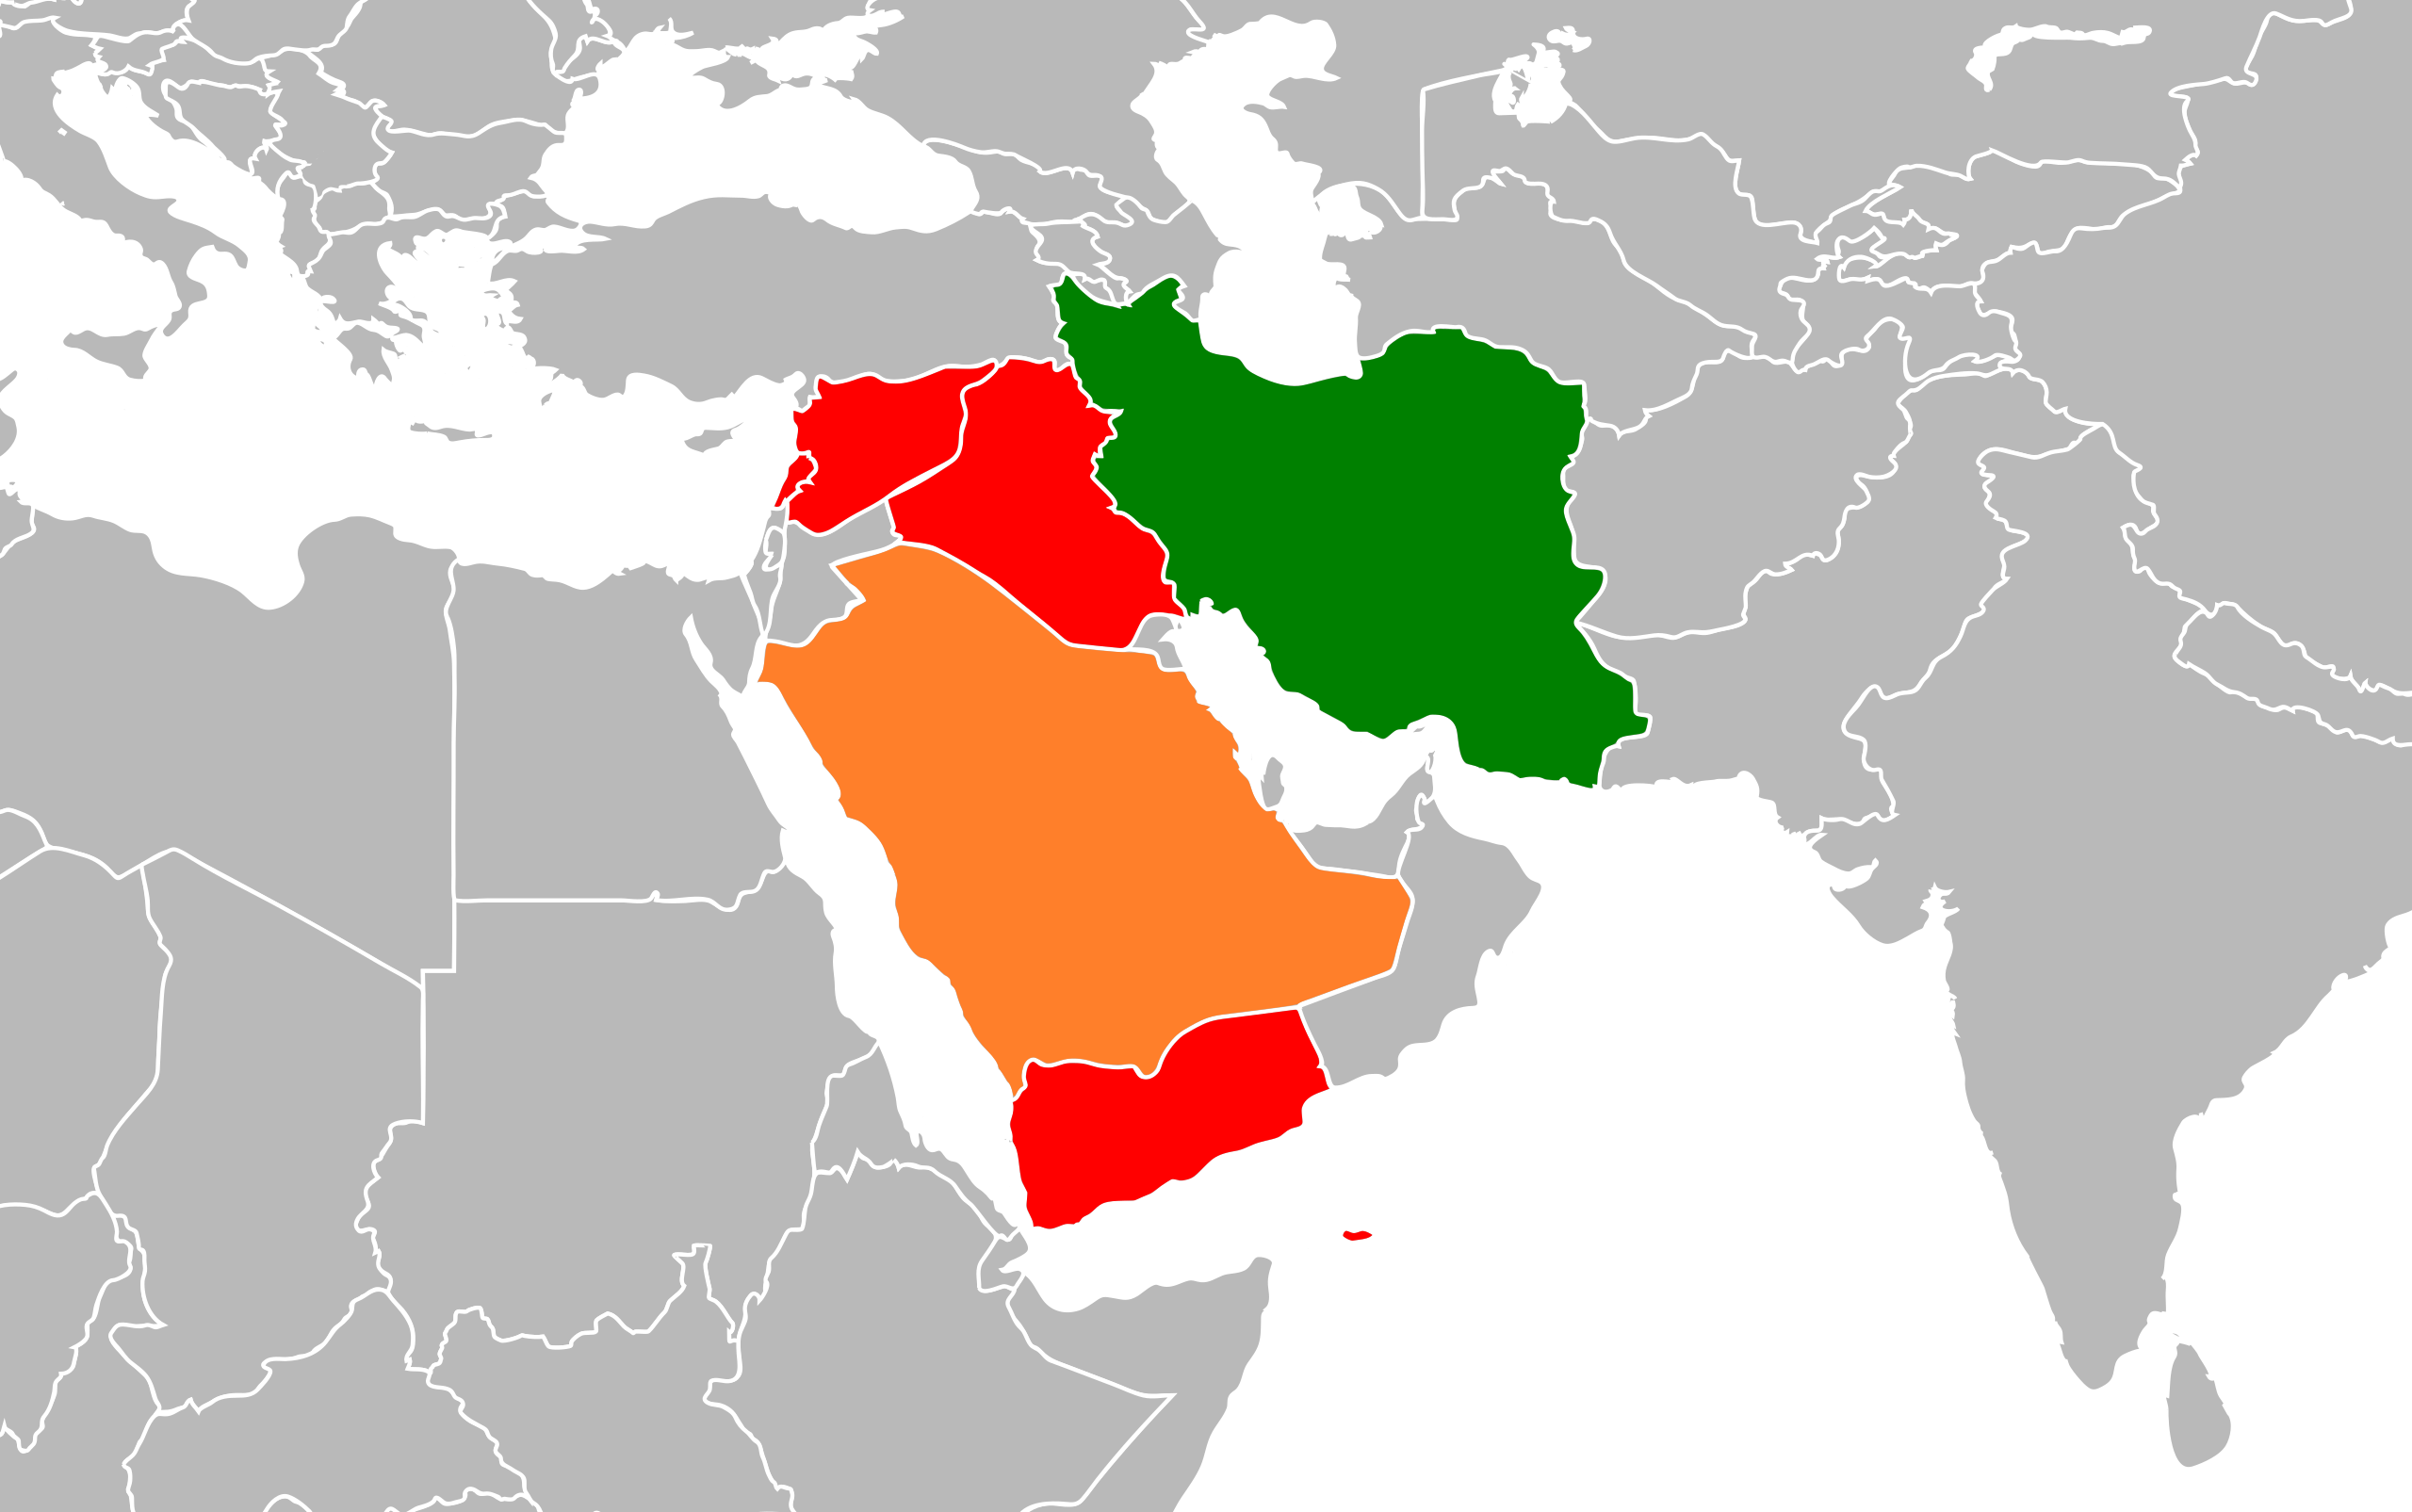 Với ký hiệu Hiệp định hòa giải giữa Iran và Ả Rập Saudi, khu vực Trung Đông đang đón nhận một nét tích cực trong quan hệ quốc tế. Chính sự hợp tác và hoà giải đó sẽ đưa tới những cơ hội mới, mở rộng chính trị và kinh tế của cả hai quốc gia. Hãy đón xem hình ảnh liên quan đến sự kiện đầy ý nghĩa này.